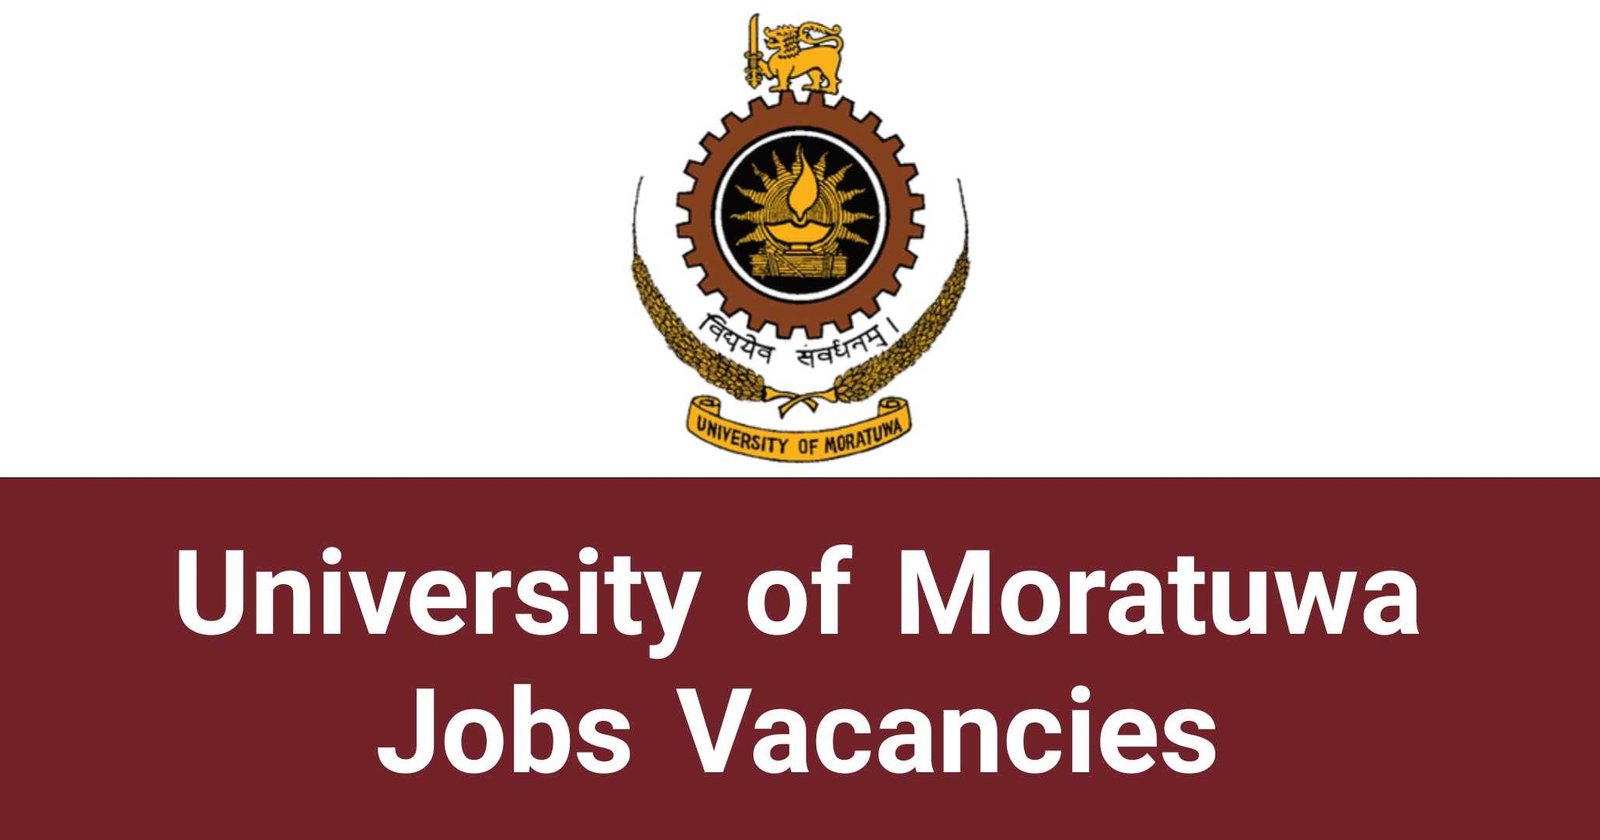 University of Moratuwa Jobs Vacancies Recruitments Applications